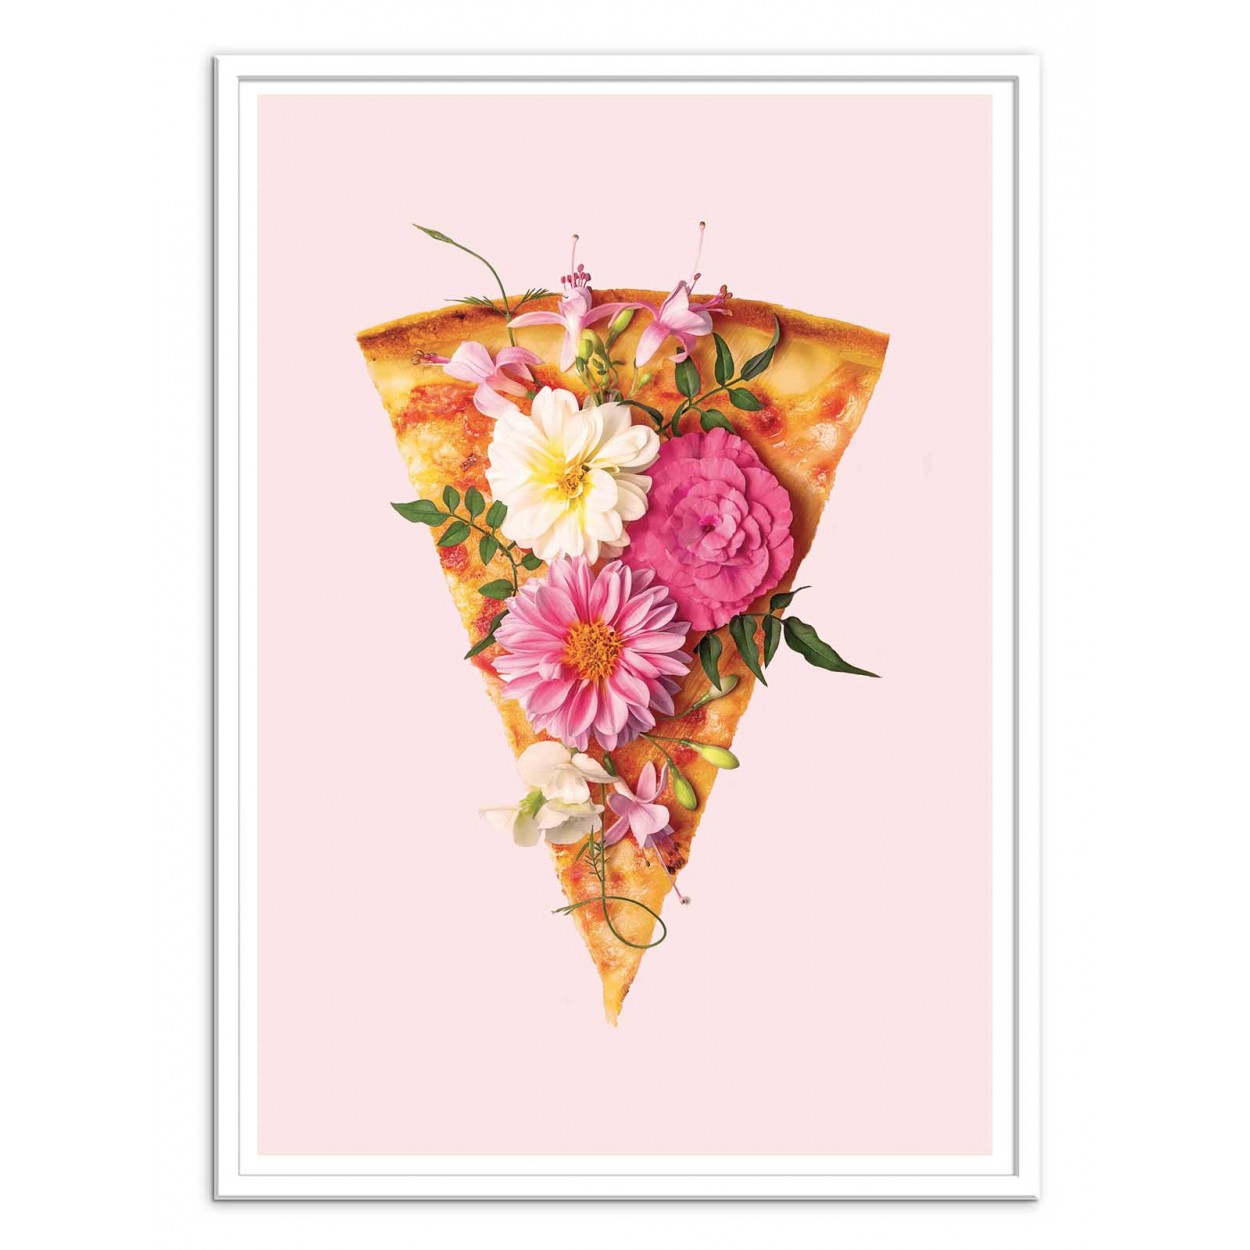 Art-Poster Pop art surrealist - Floral Pizza, by Paul Fuentes